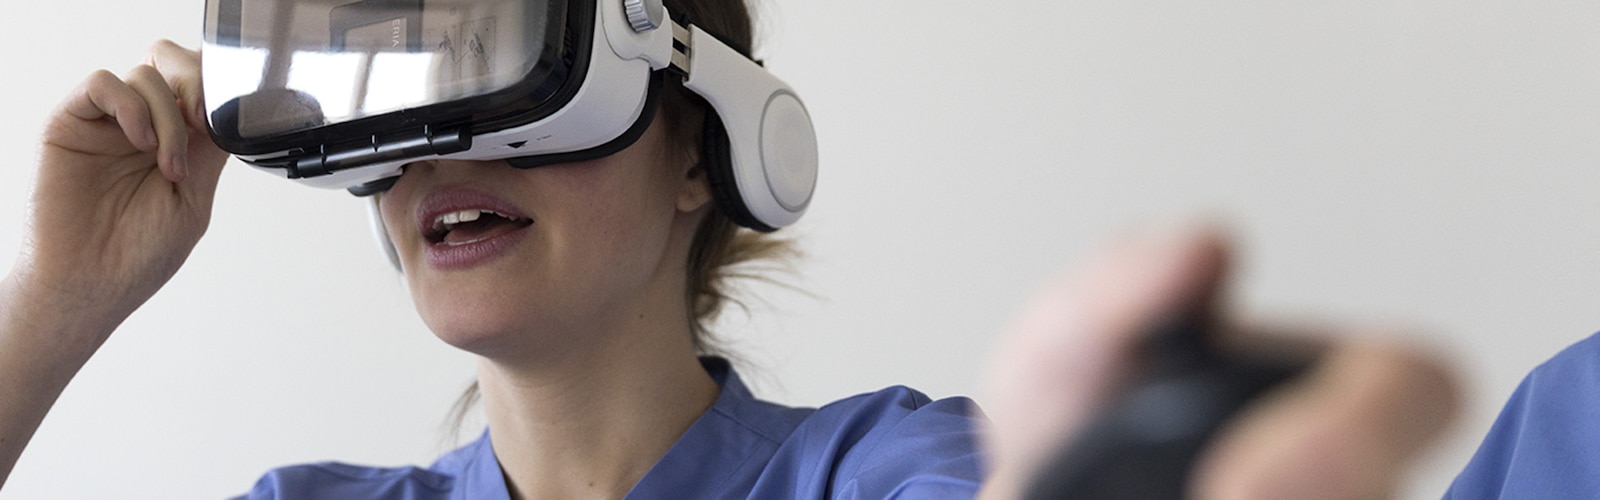 VR-szemüveget viselő ápolónő